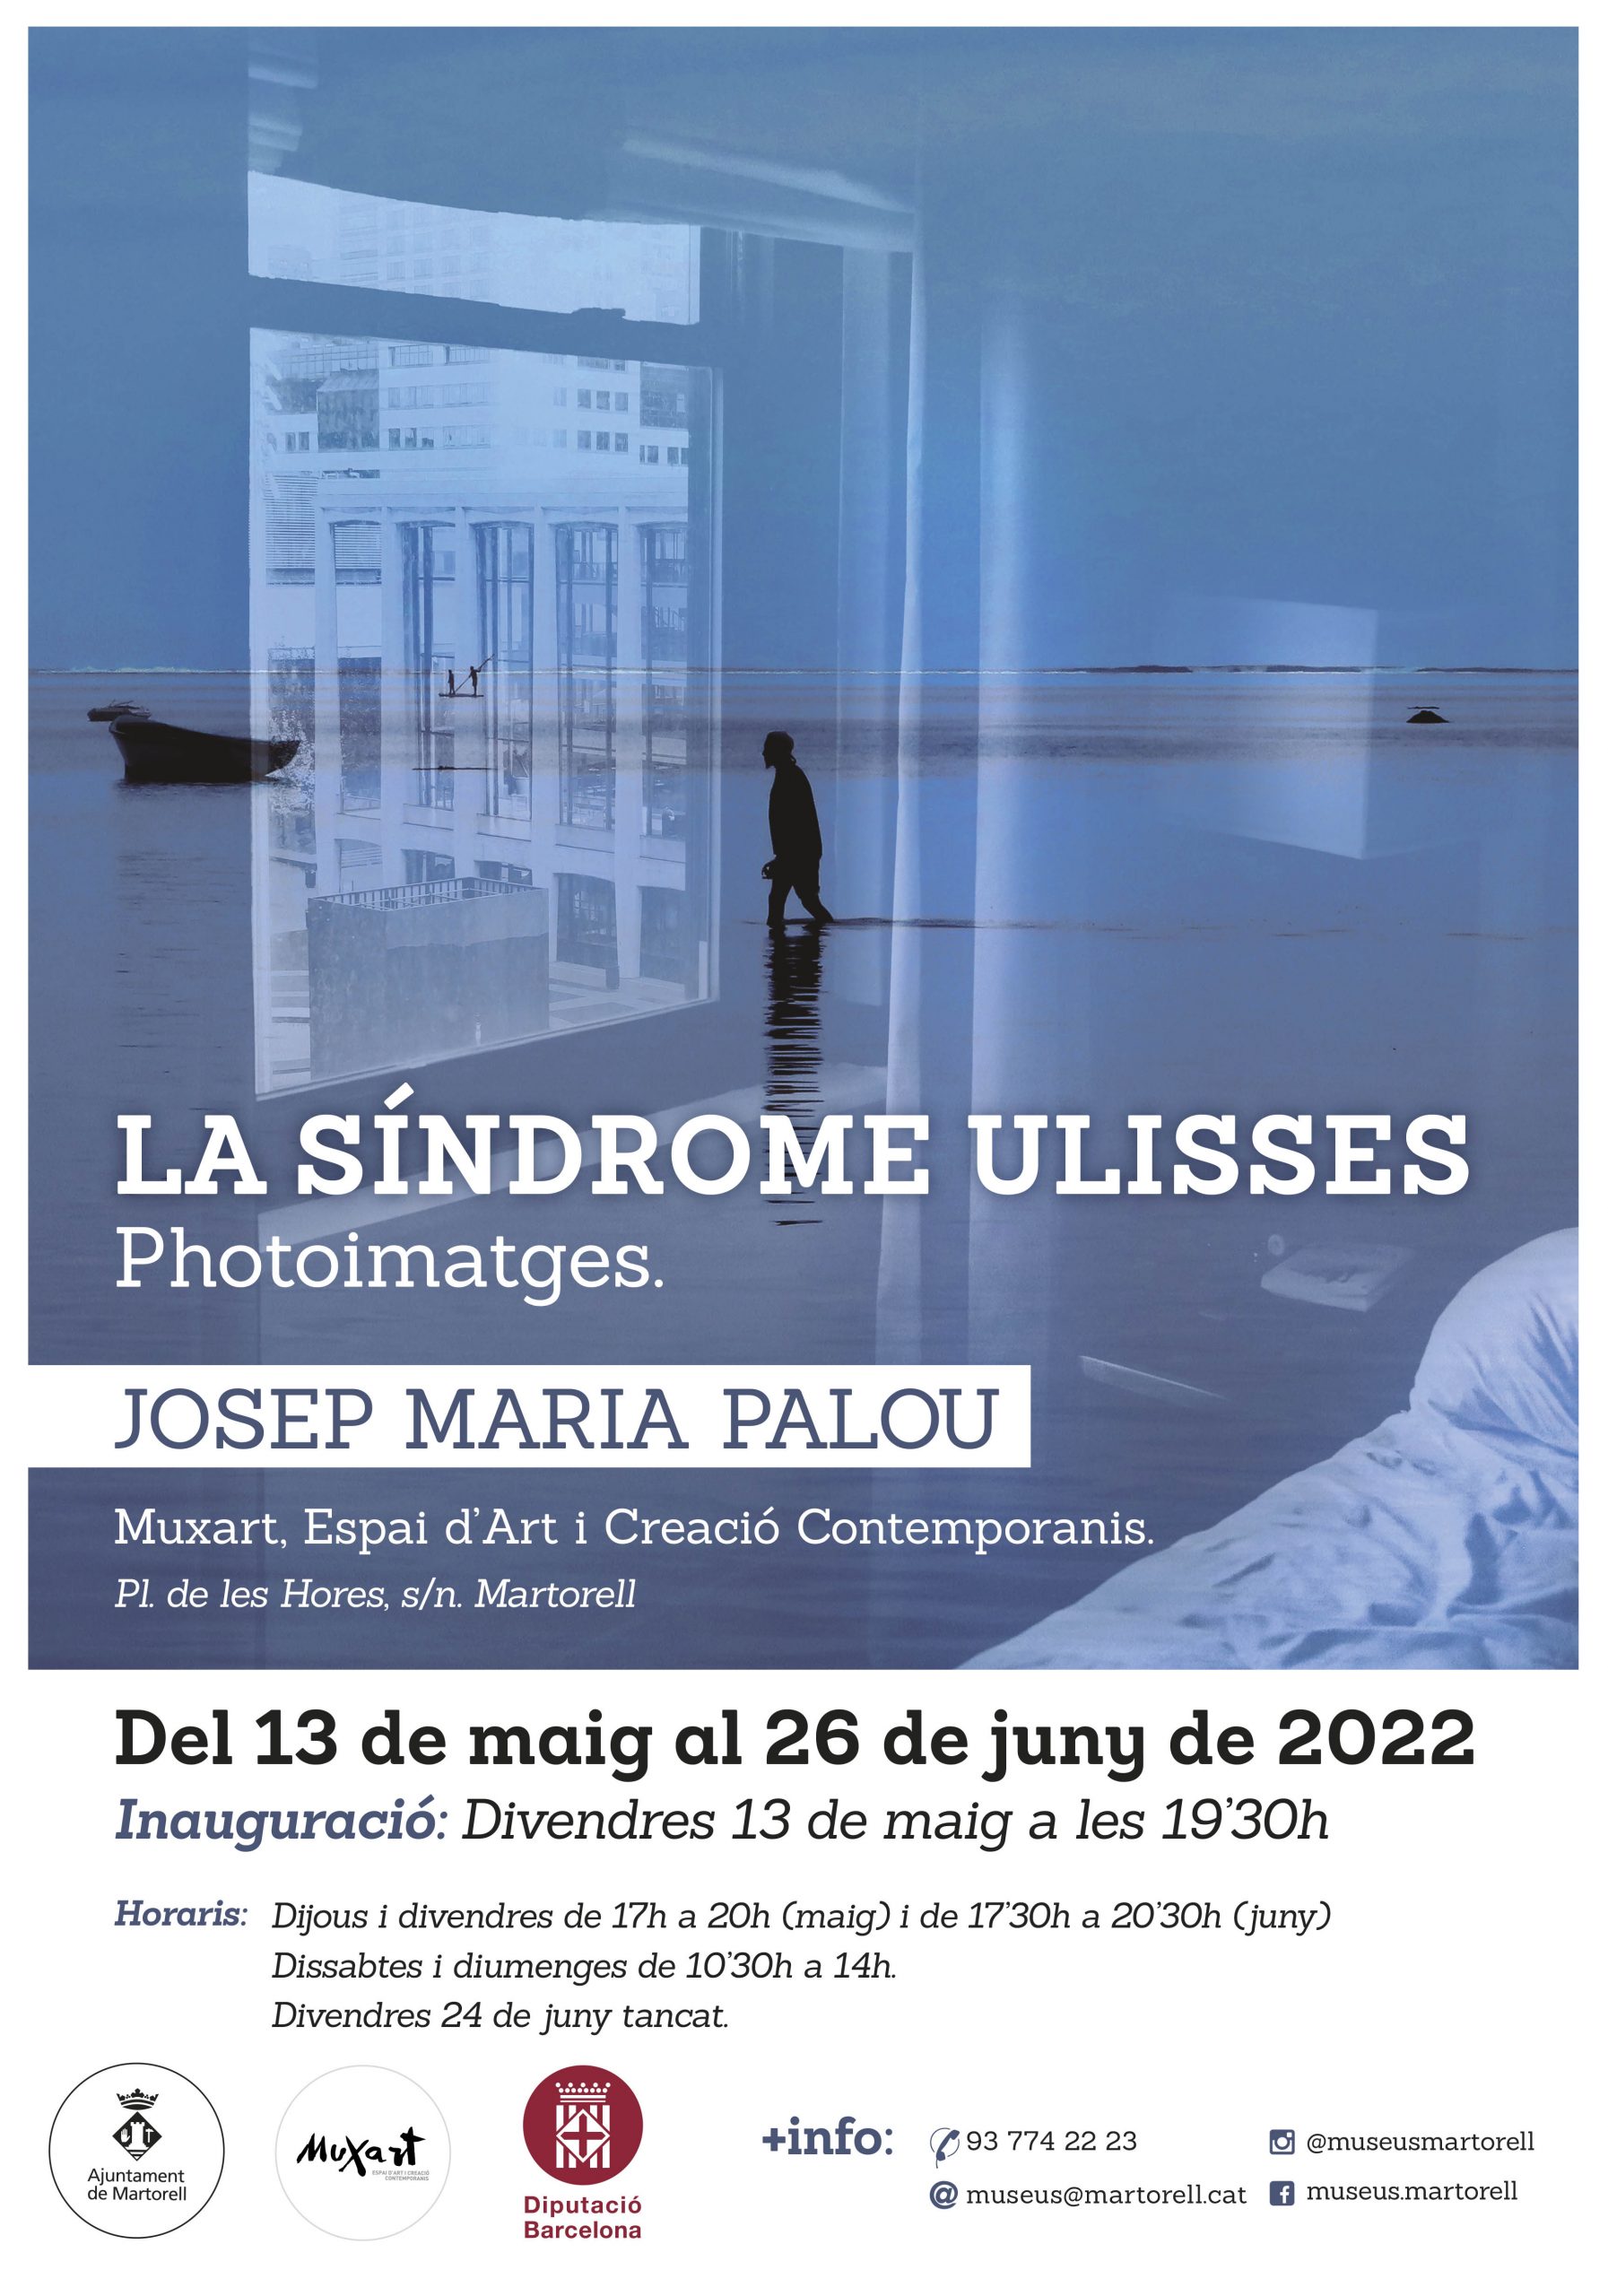 La síndrome Ulisses. Photoimatges. Josep M. Palou (DIM 2022)